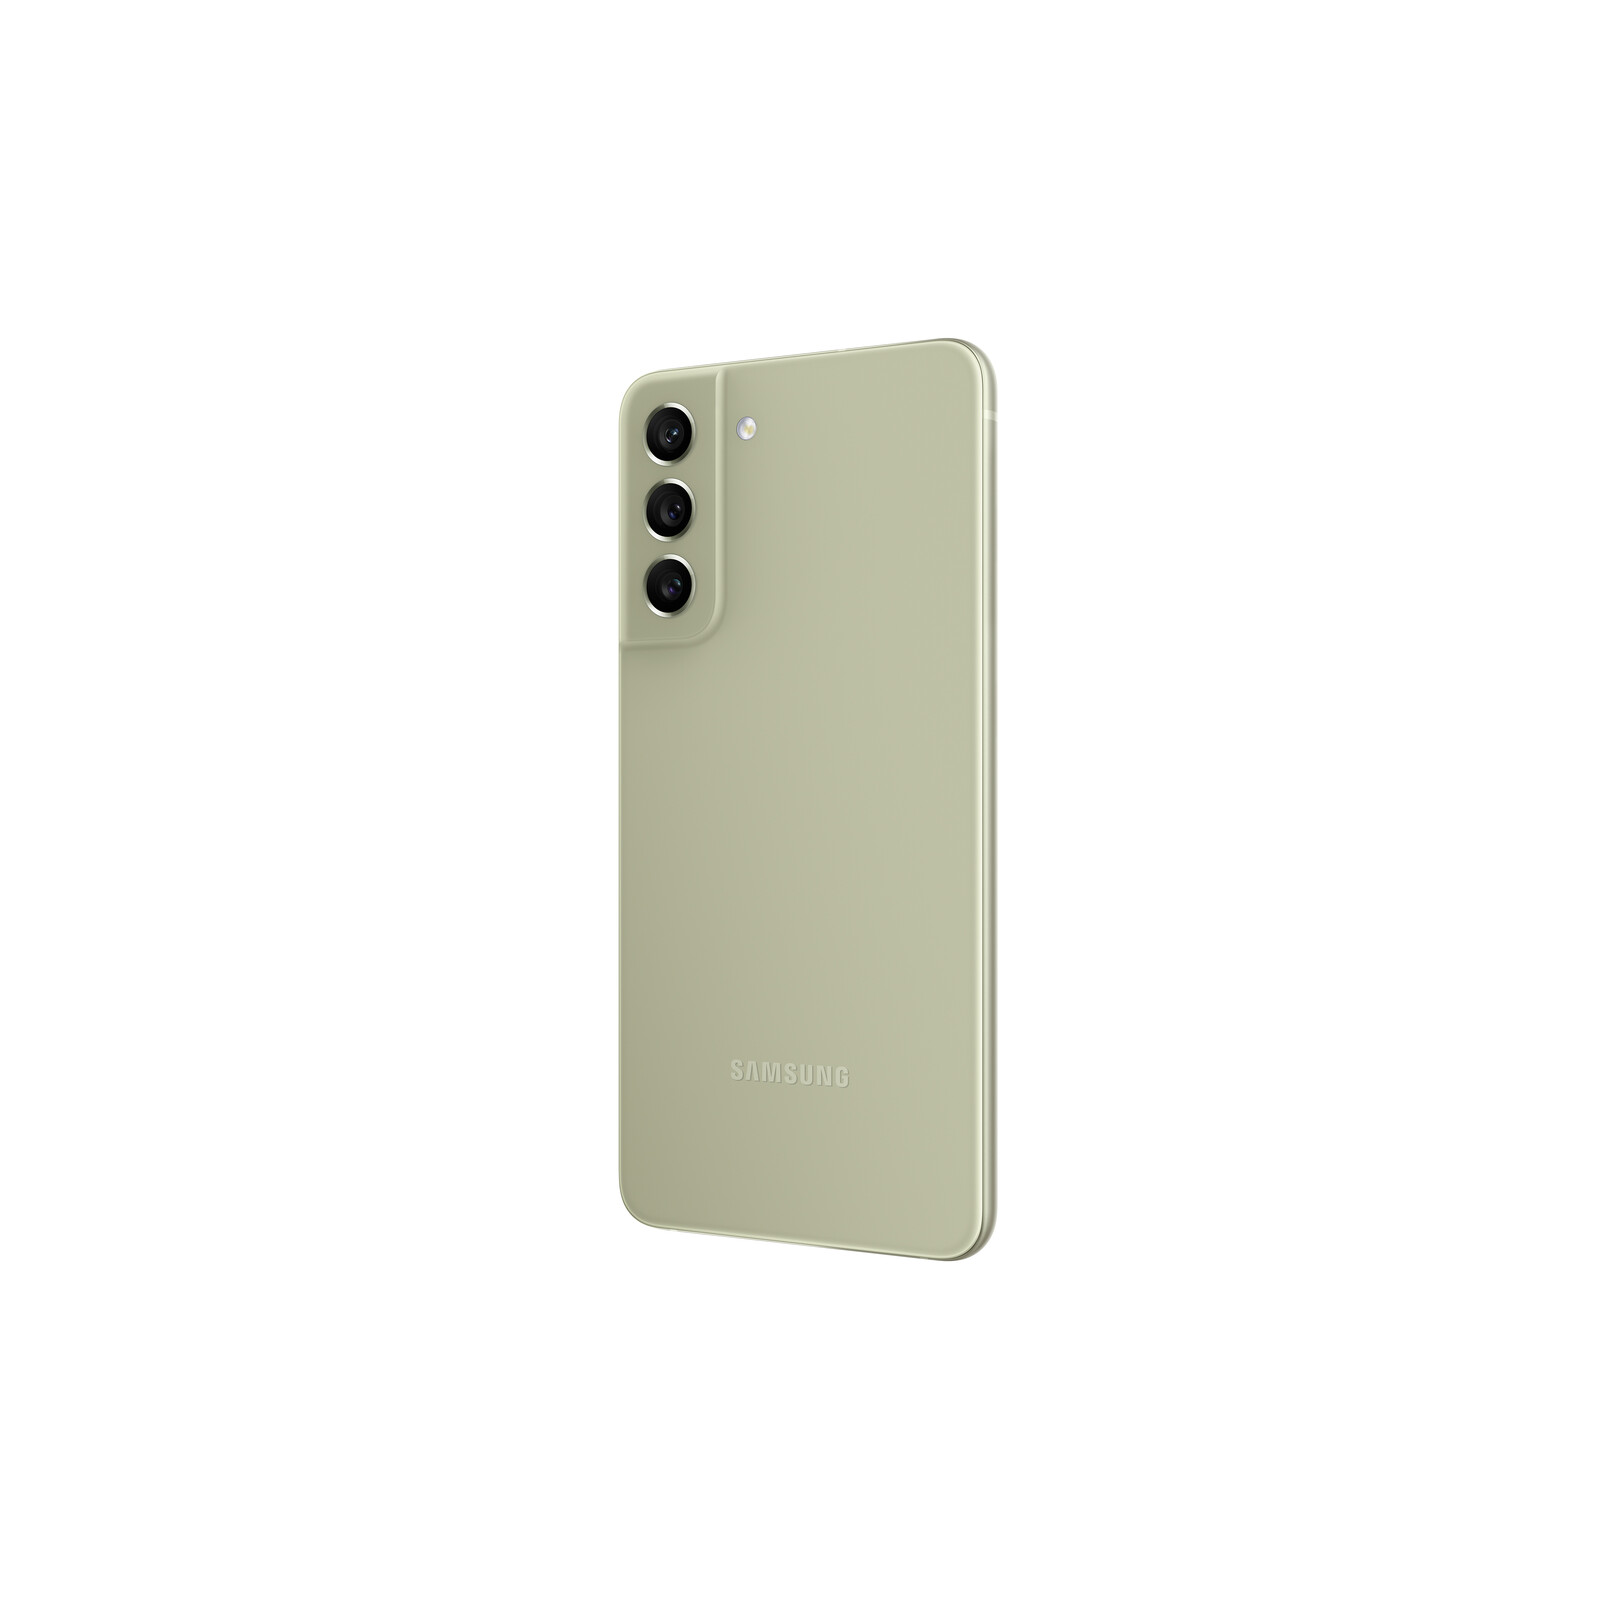 Samsung Galaxy S21 FE 256GB 5G olive Dual-SIM